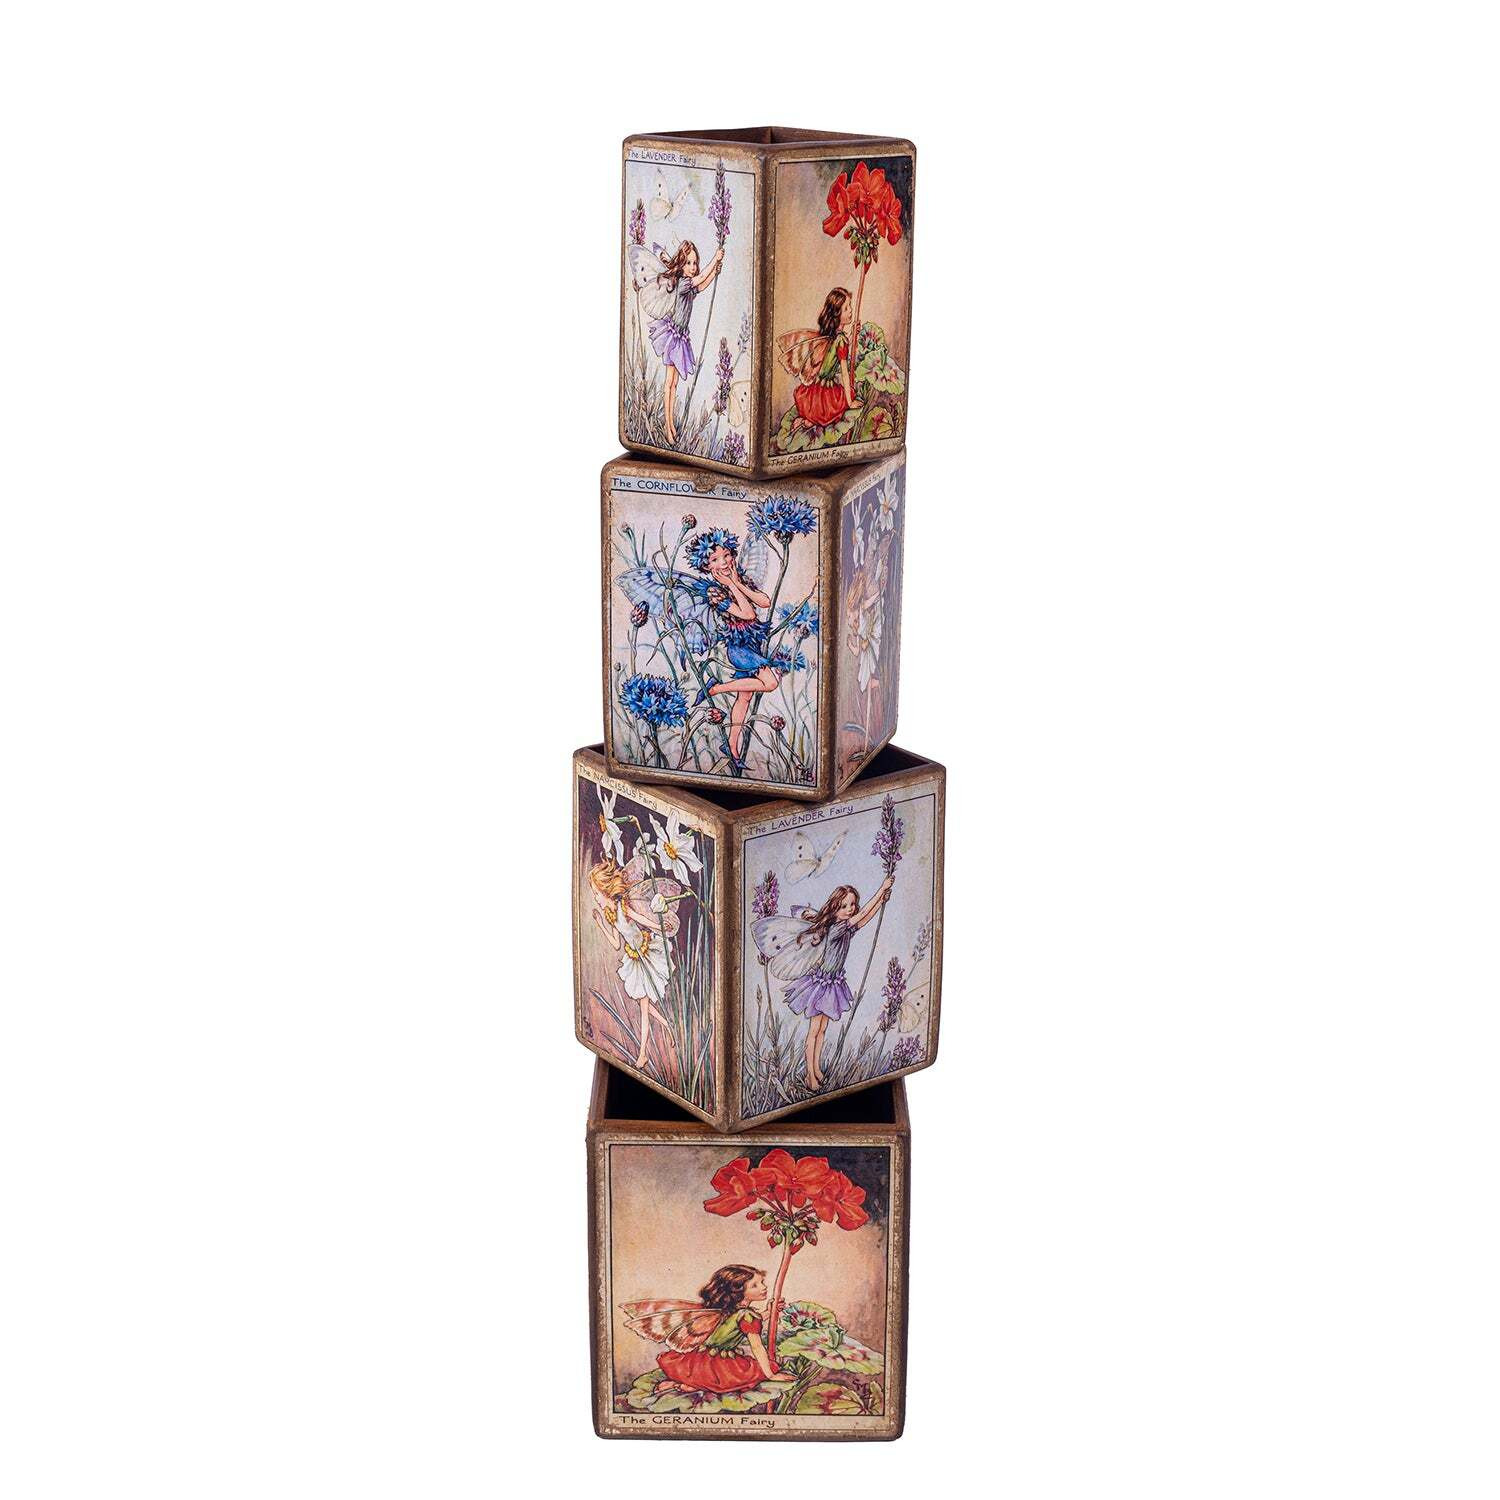 Set of 4 Nesting Fairy Boxes - image 1